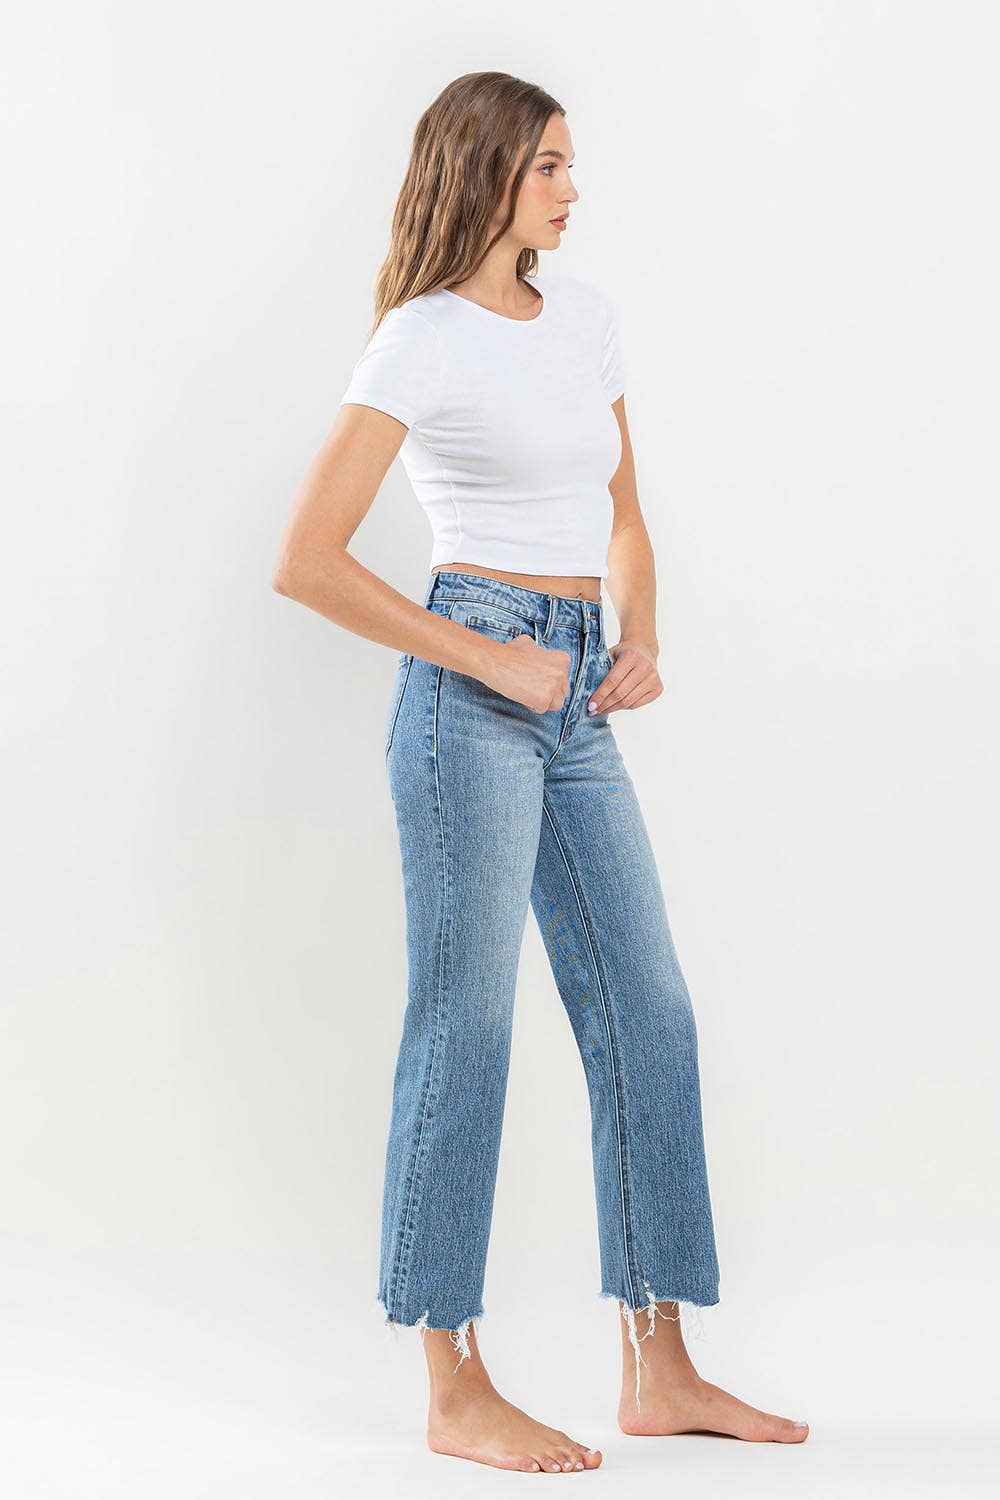 The Hannah Jeans